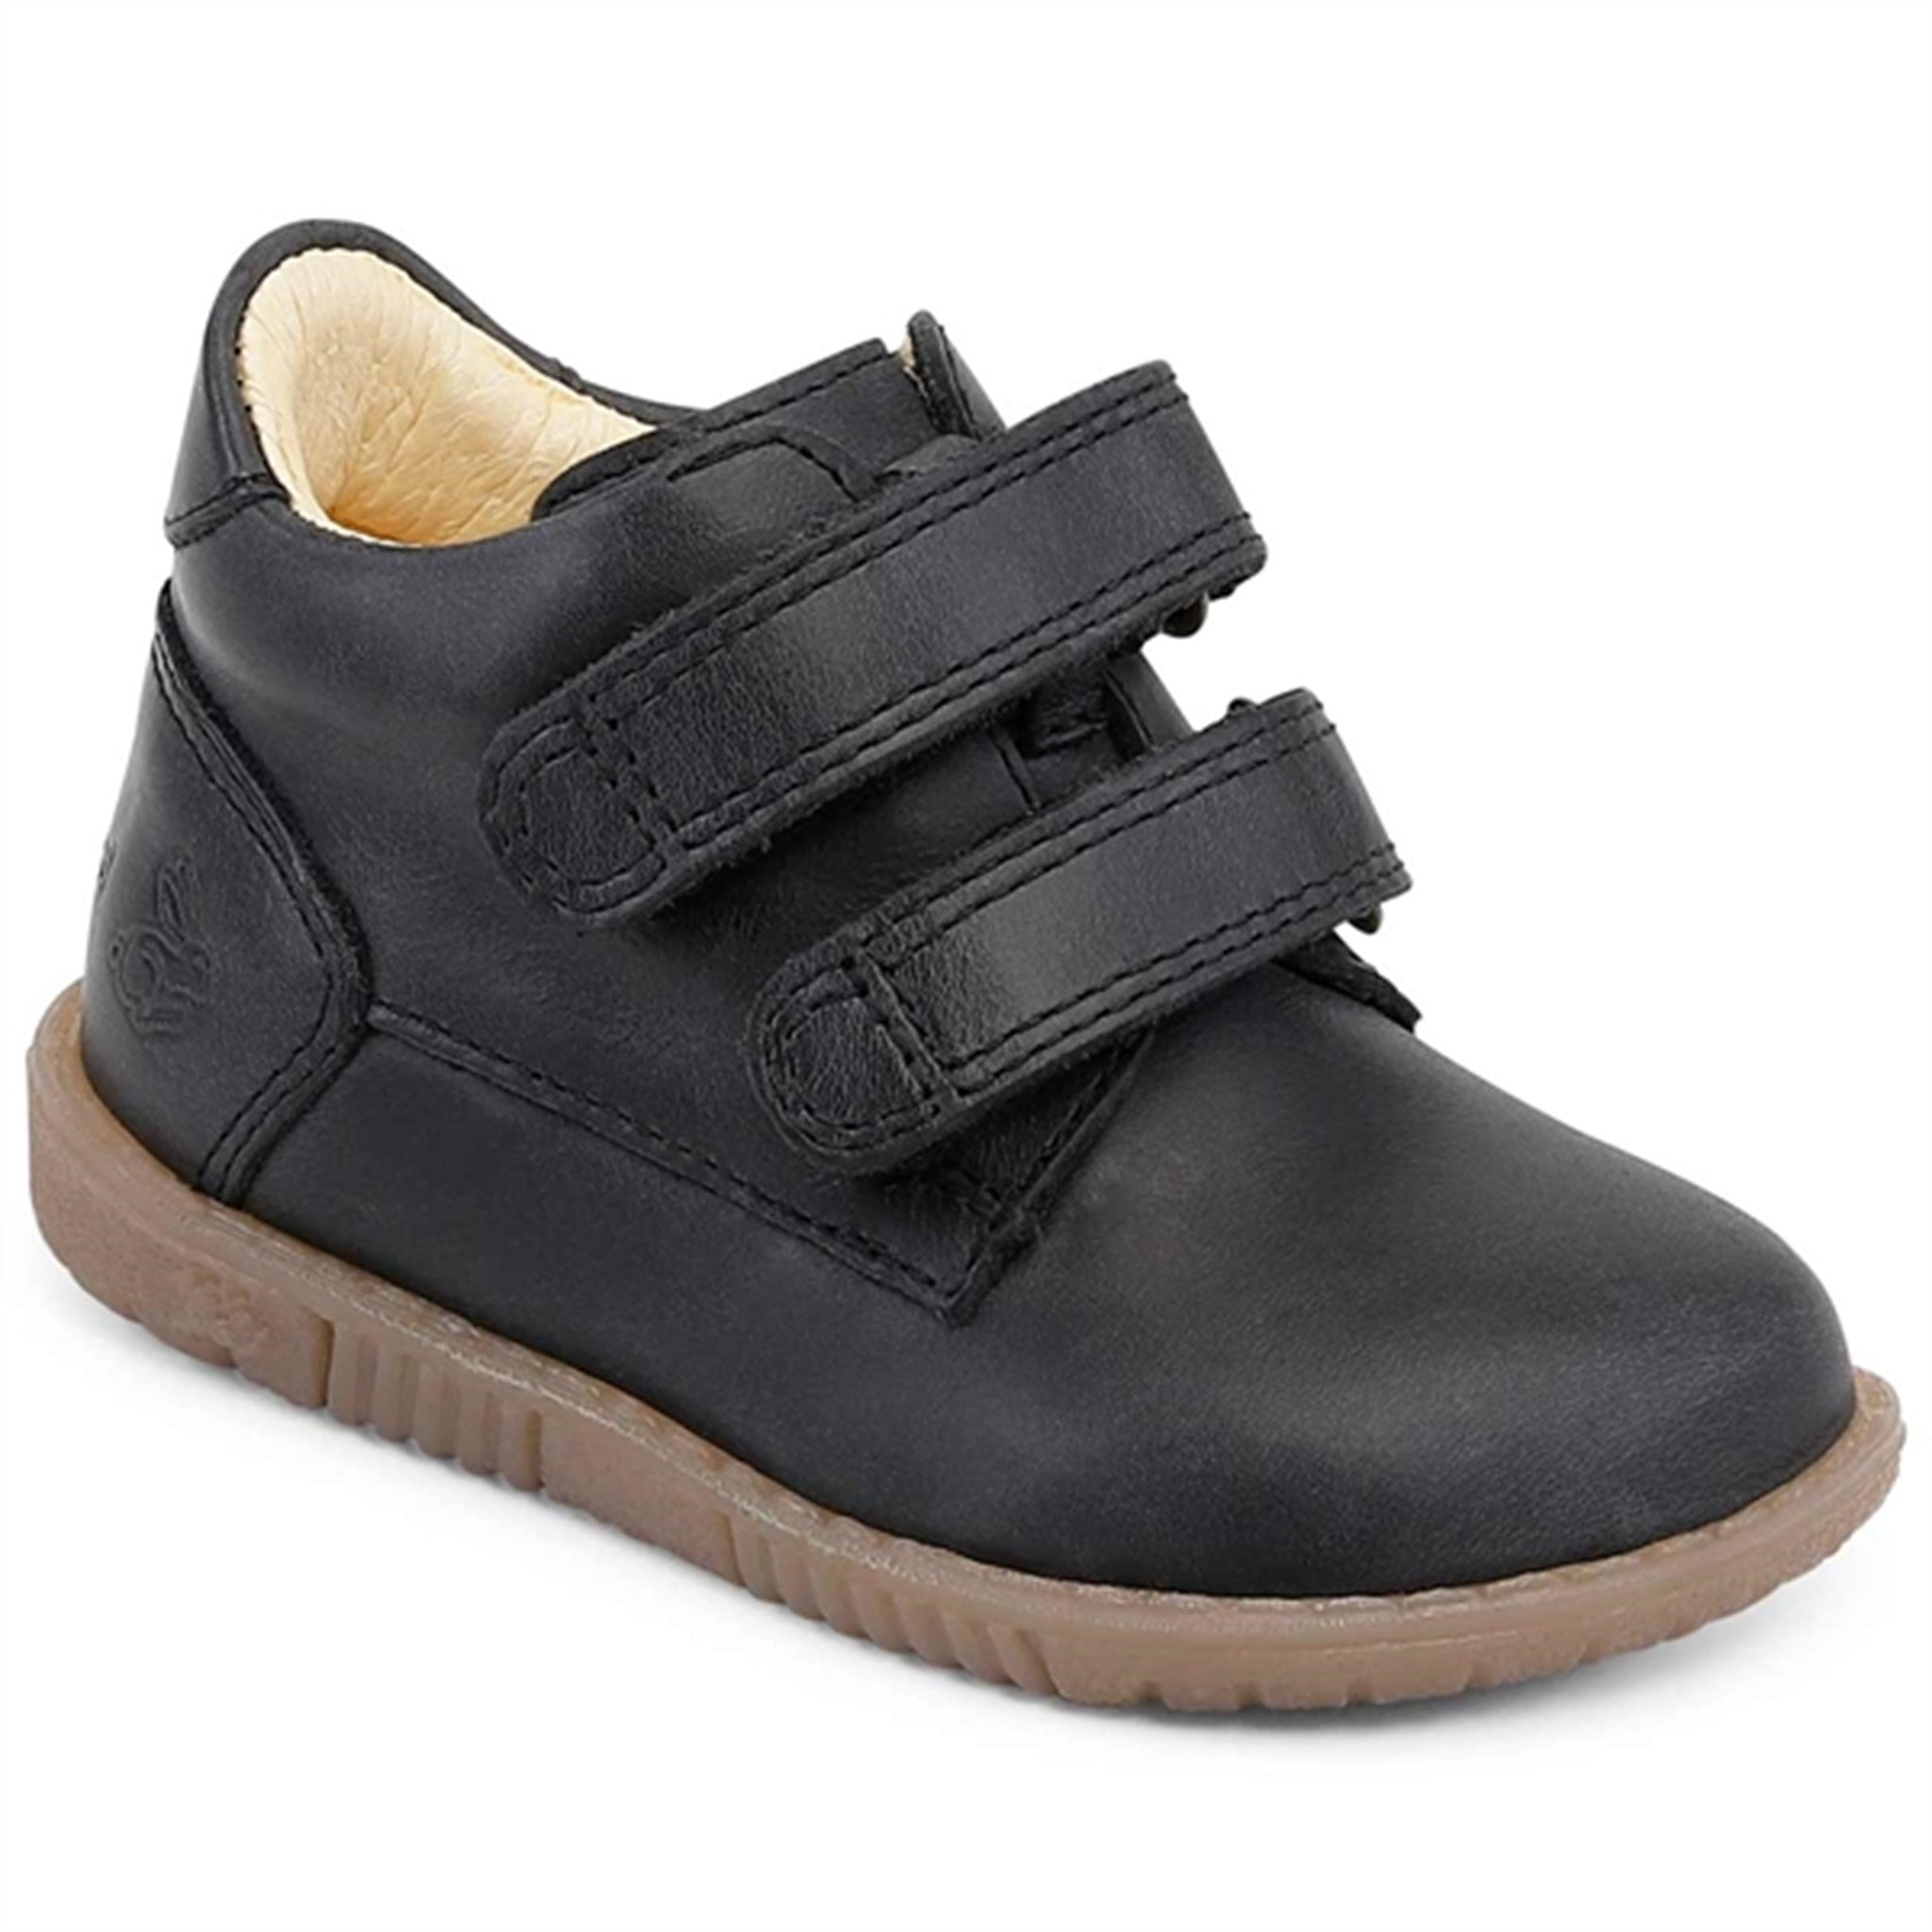 Bundgaard Ruby Kardborre Black Shoes